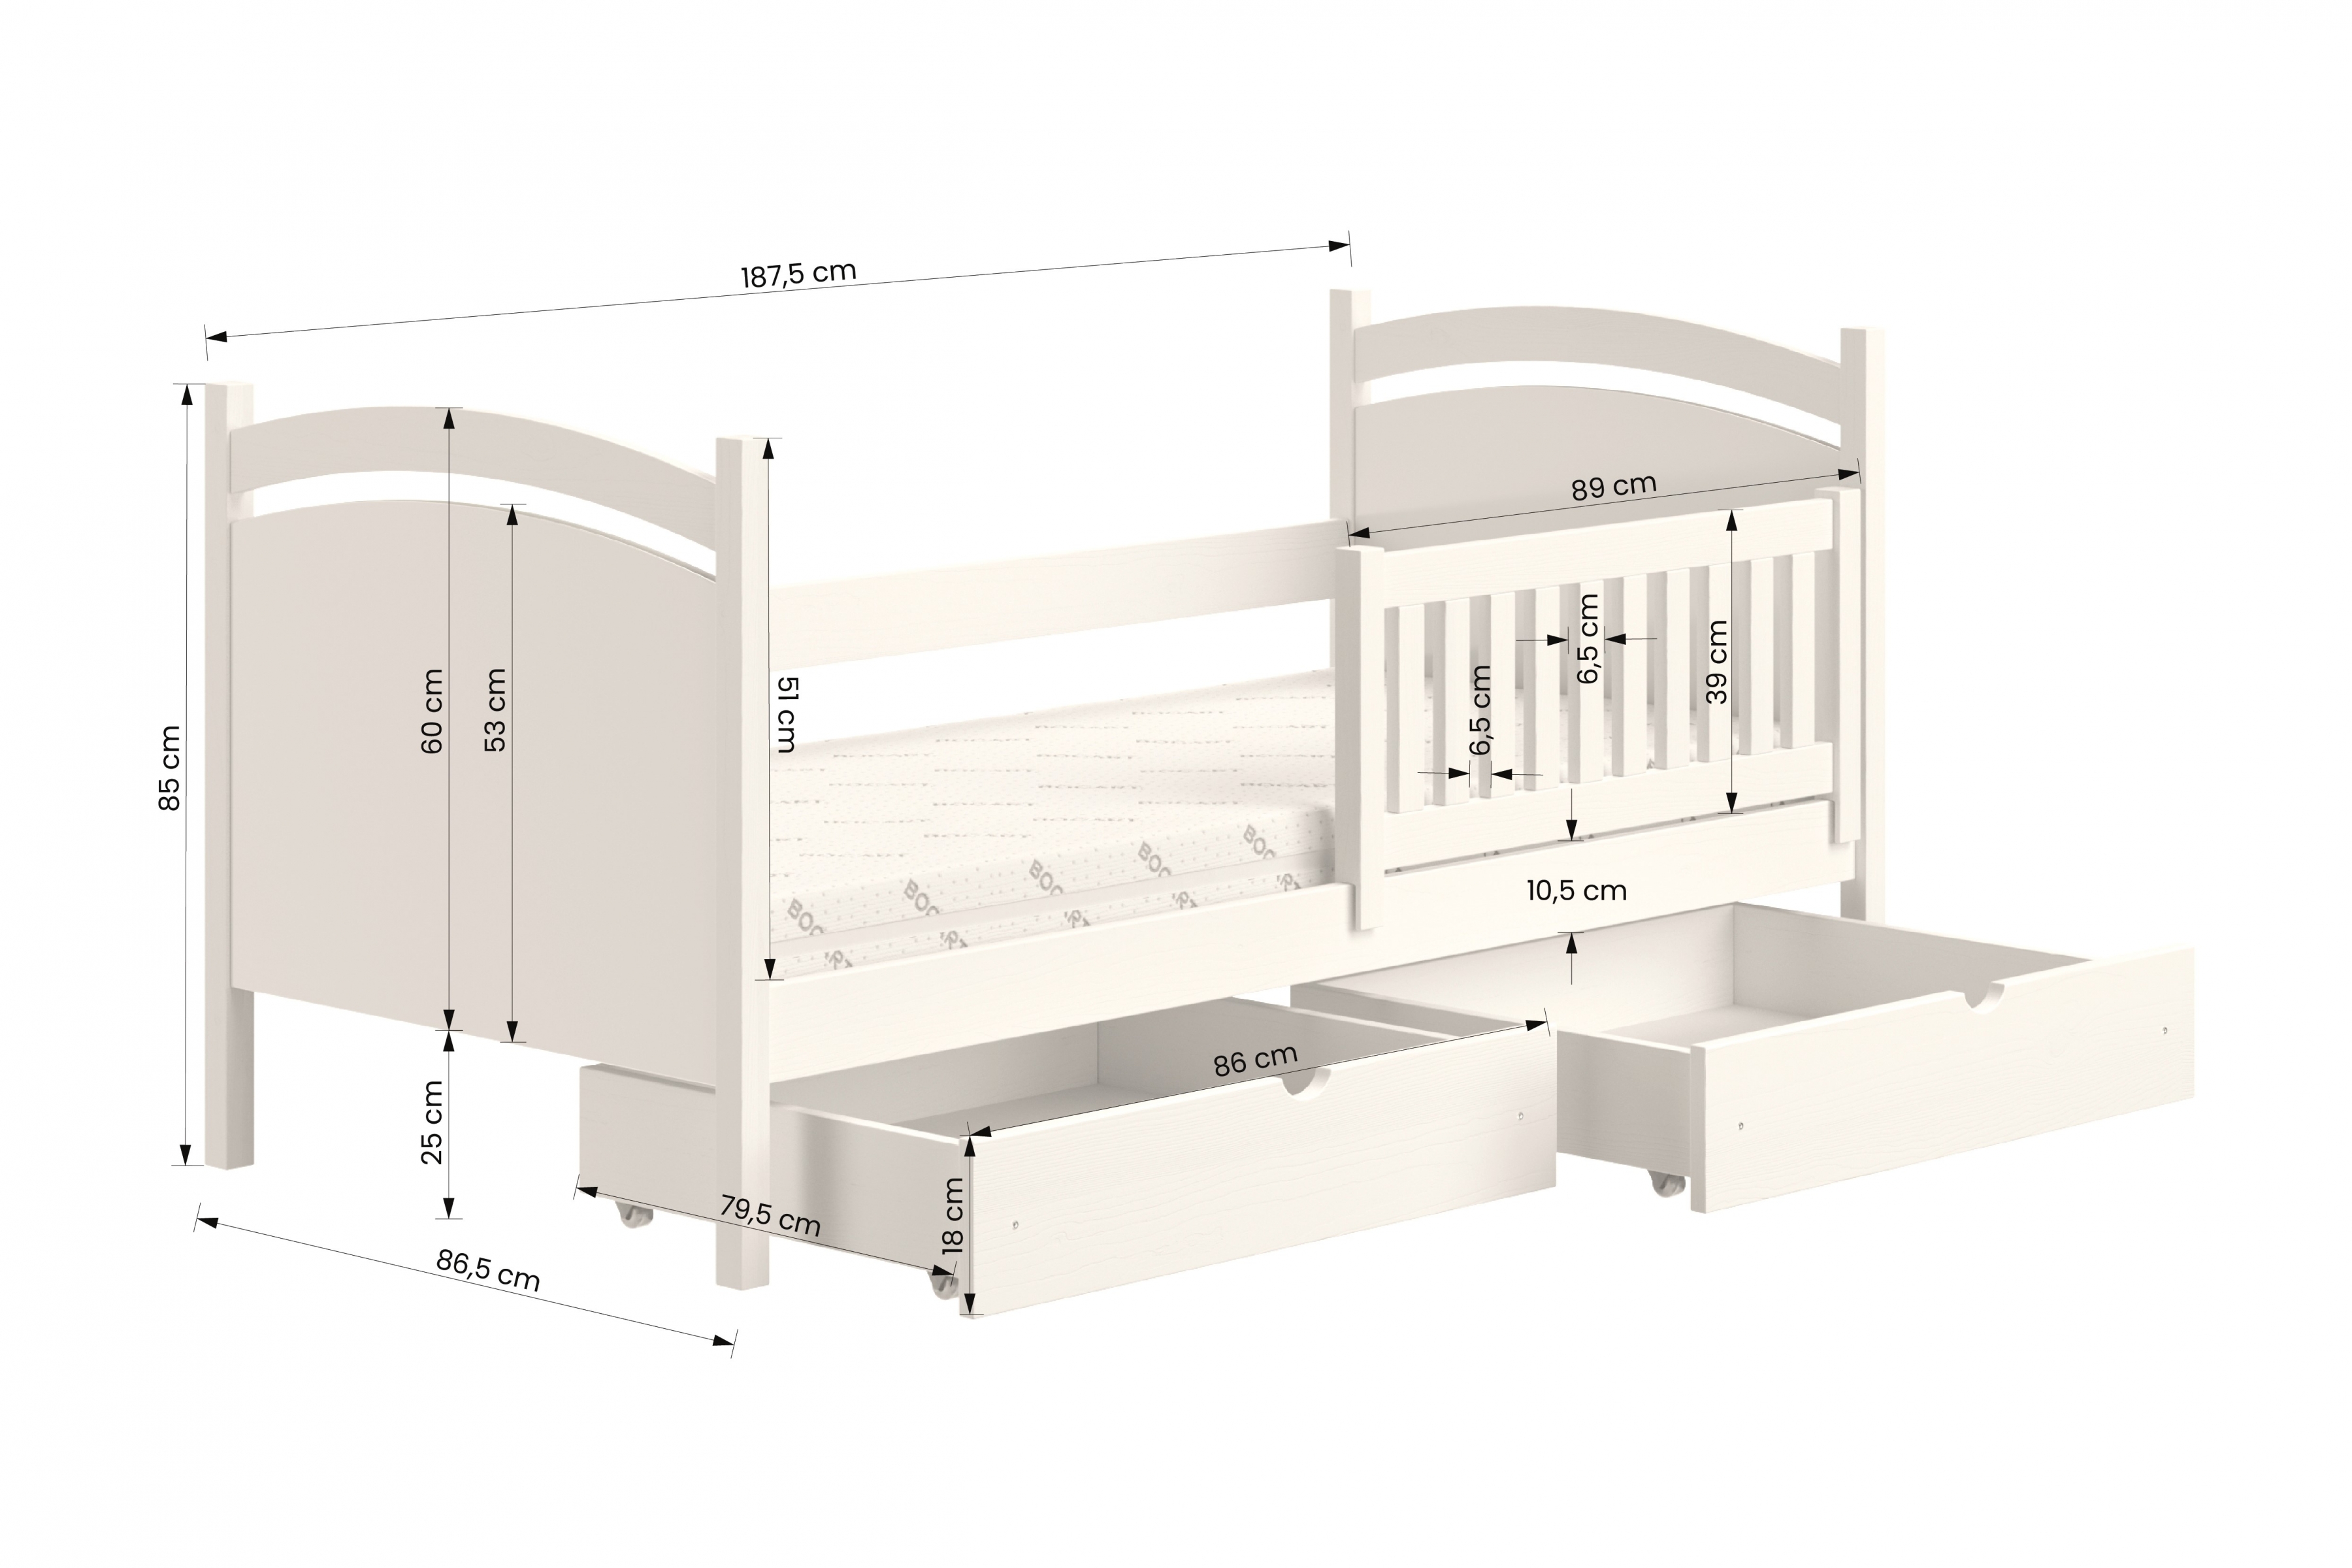  postel dětské s tabulí na suché mazání Amely - Barva Borovice, rozměr 80x180 postel dzieciece z tablica suchoscieralna Amely - Rozměry